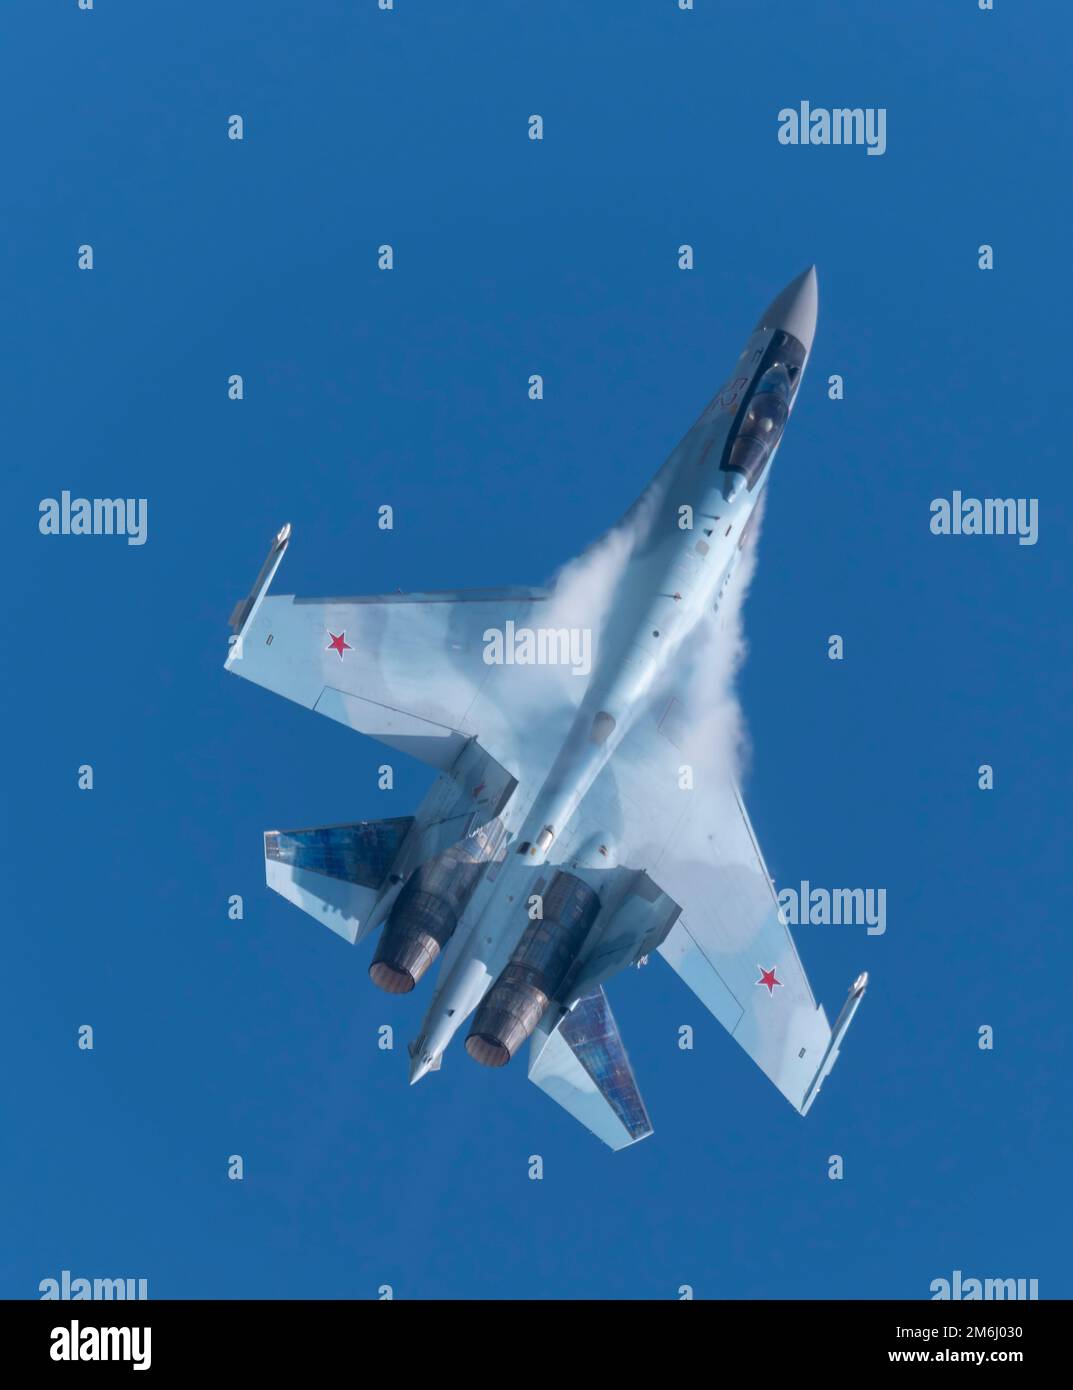 Moscou Russie Zhukovsky Airfield 25 juillet 2021: Les équipes aérobies Falcons de Russie sur les avions su-35 de l'aérospatiale internationale Banque D'Images